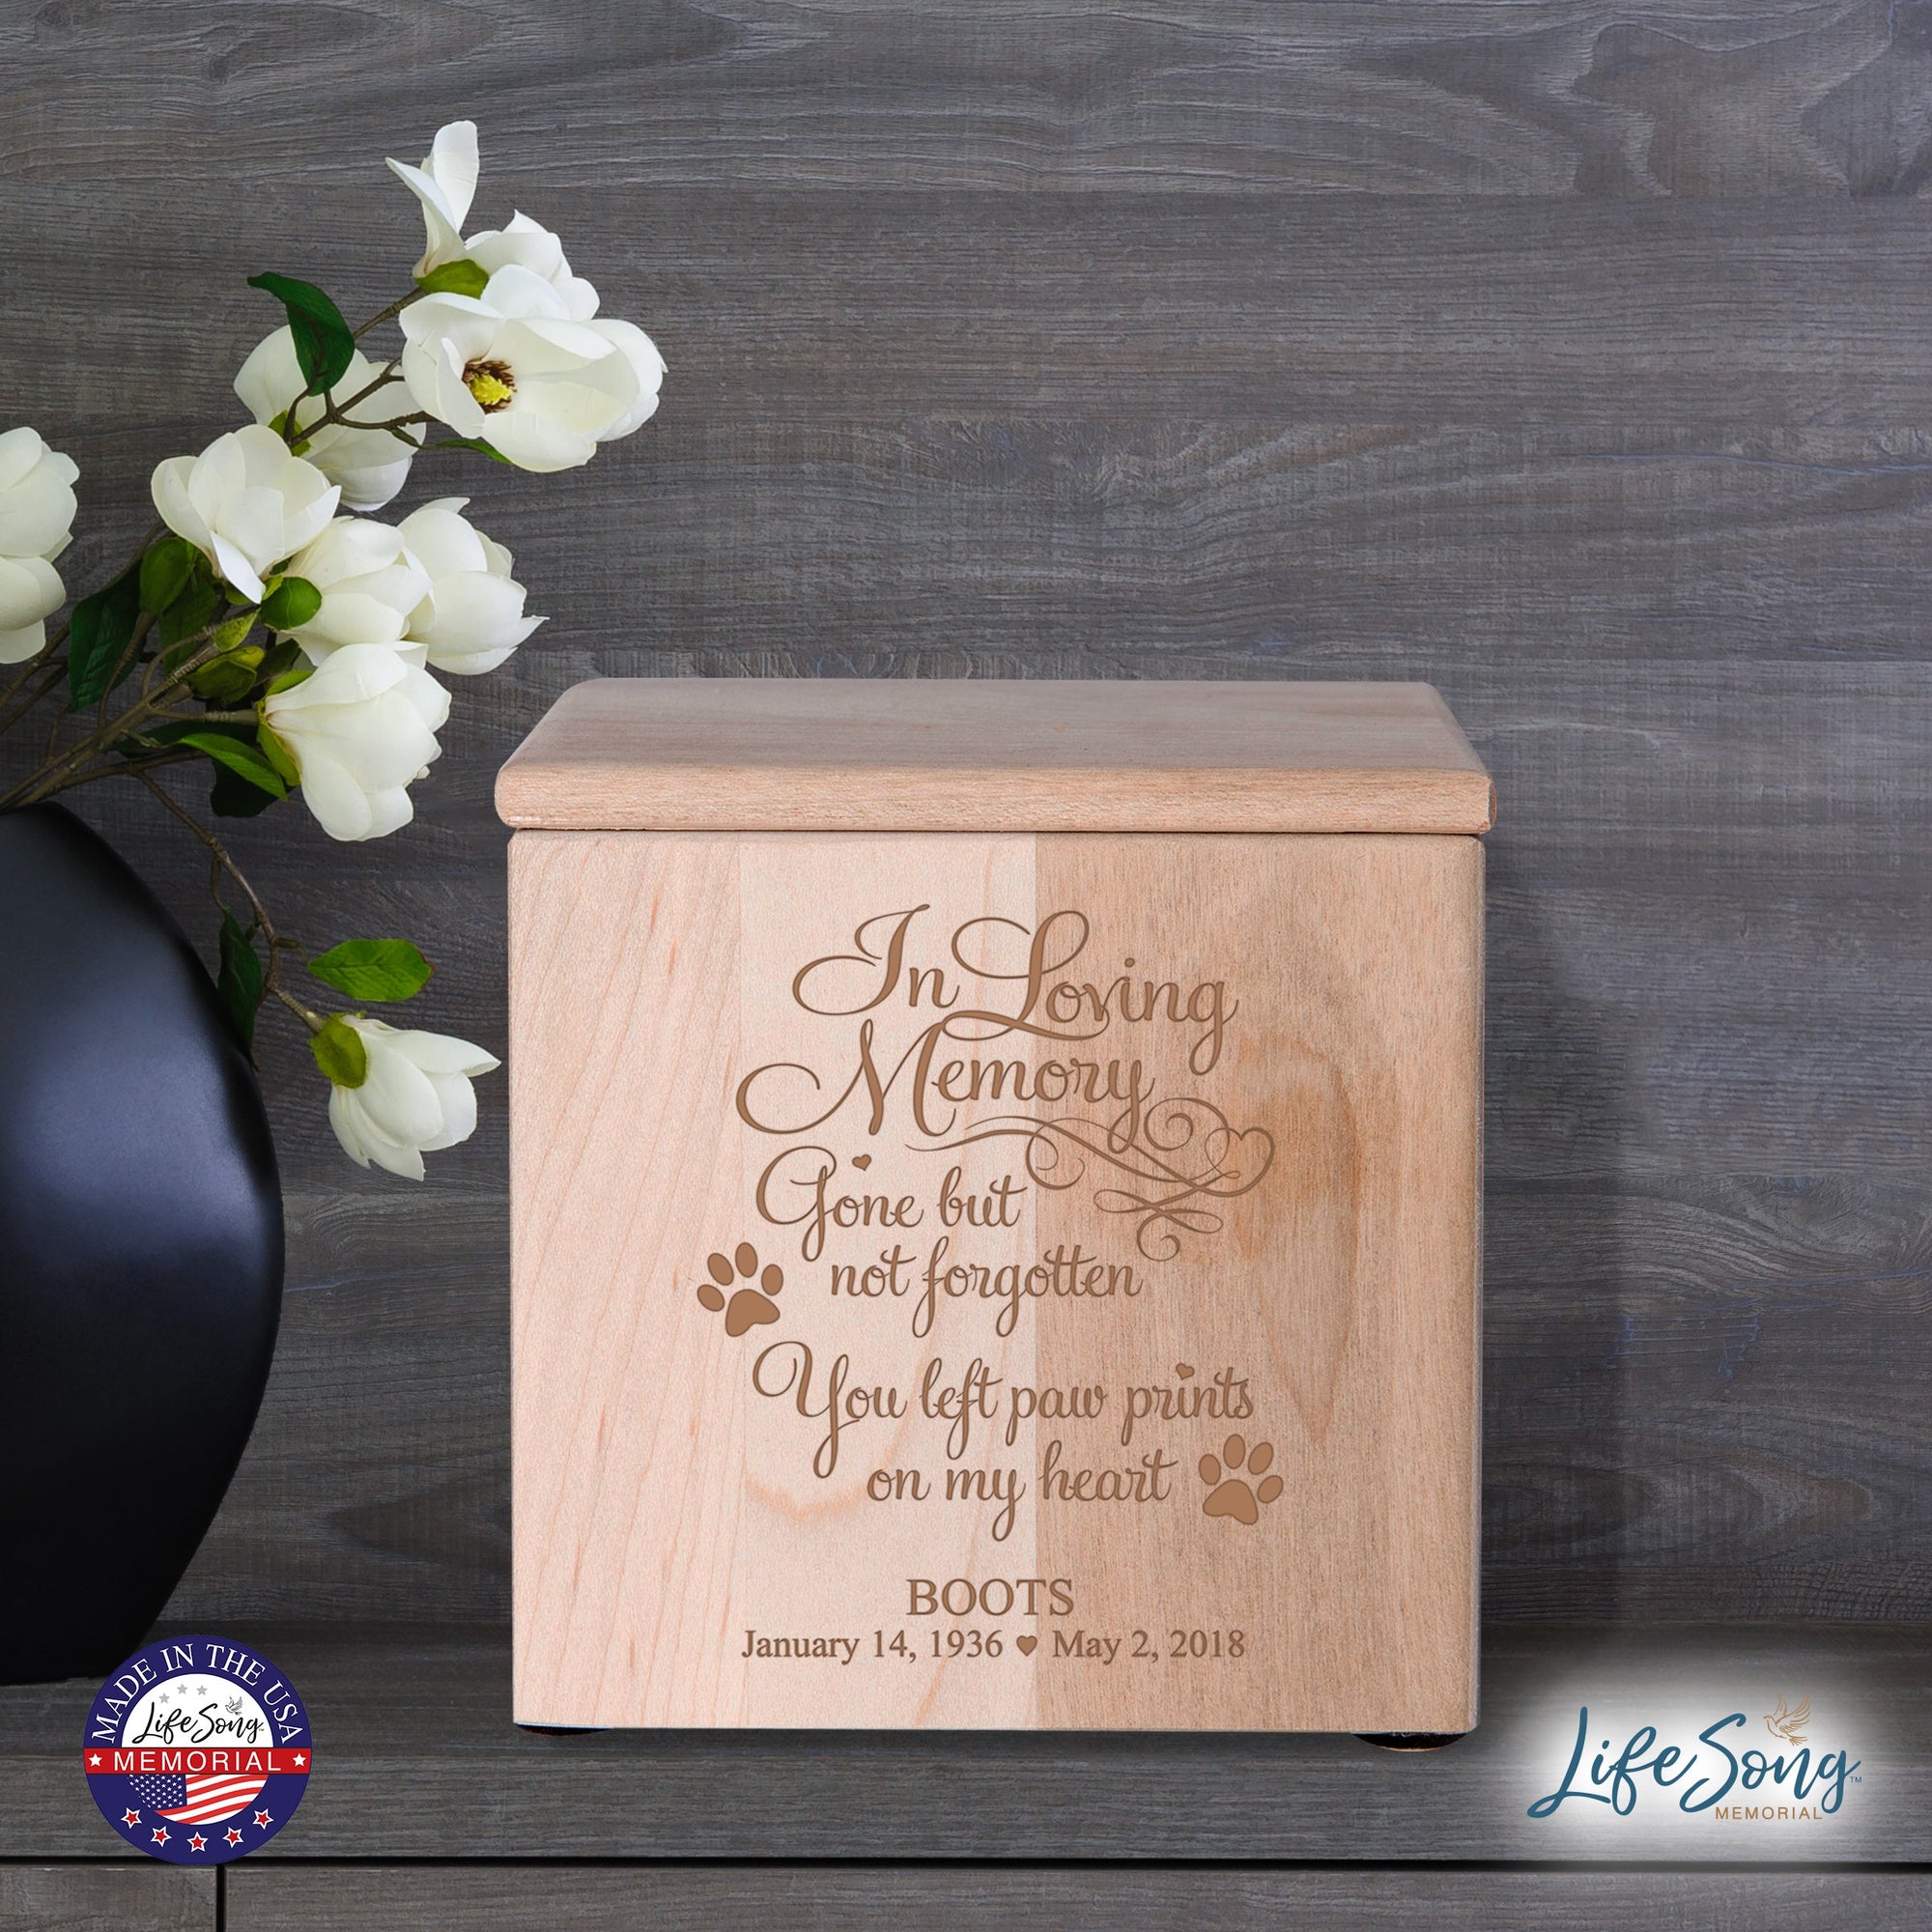 Pet Memorial Keepsake Cremation Urn Box for Dog or Cat - In Loving Memory